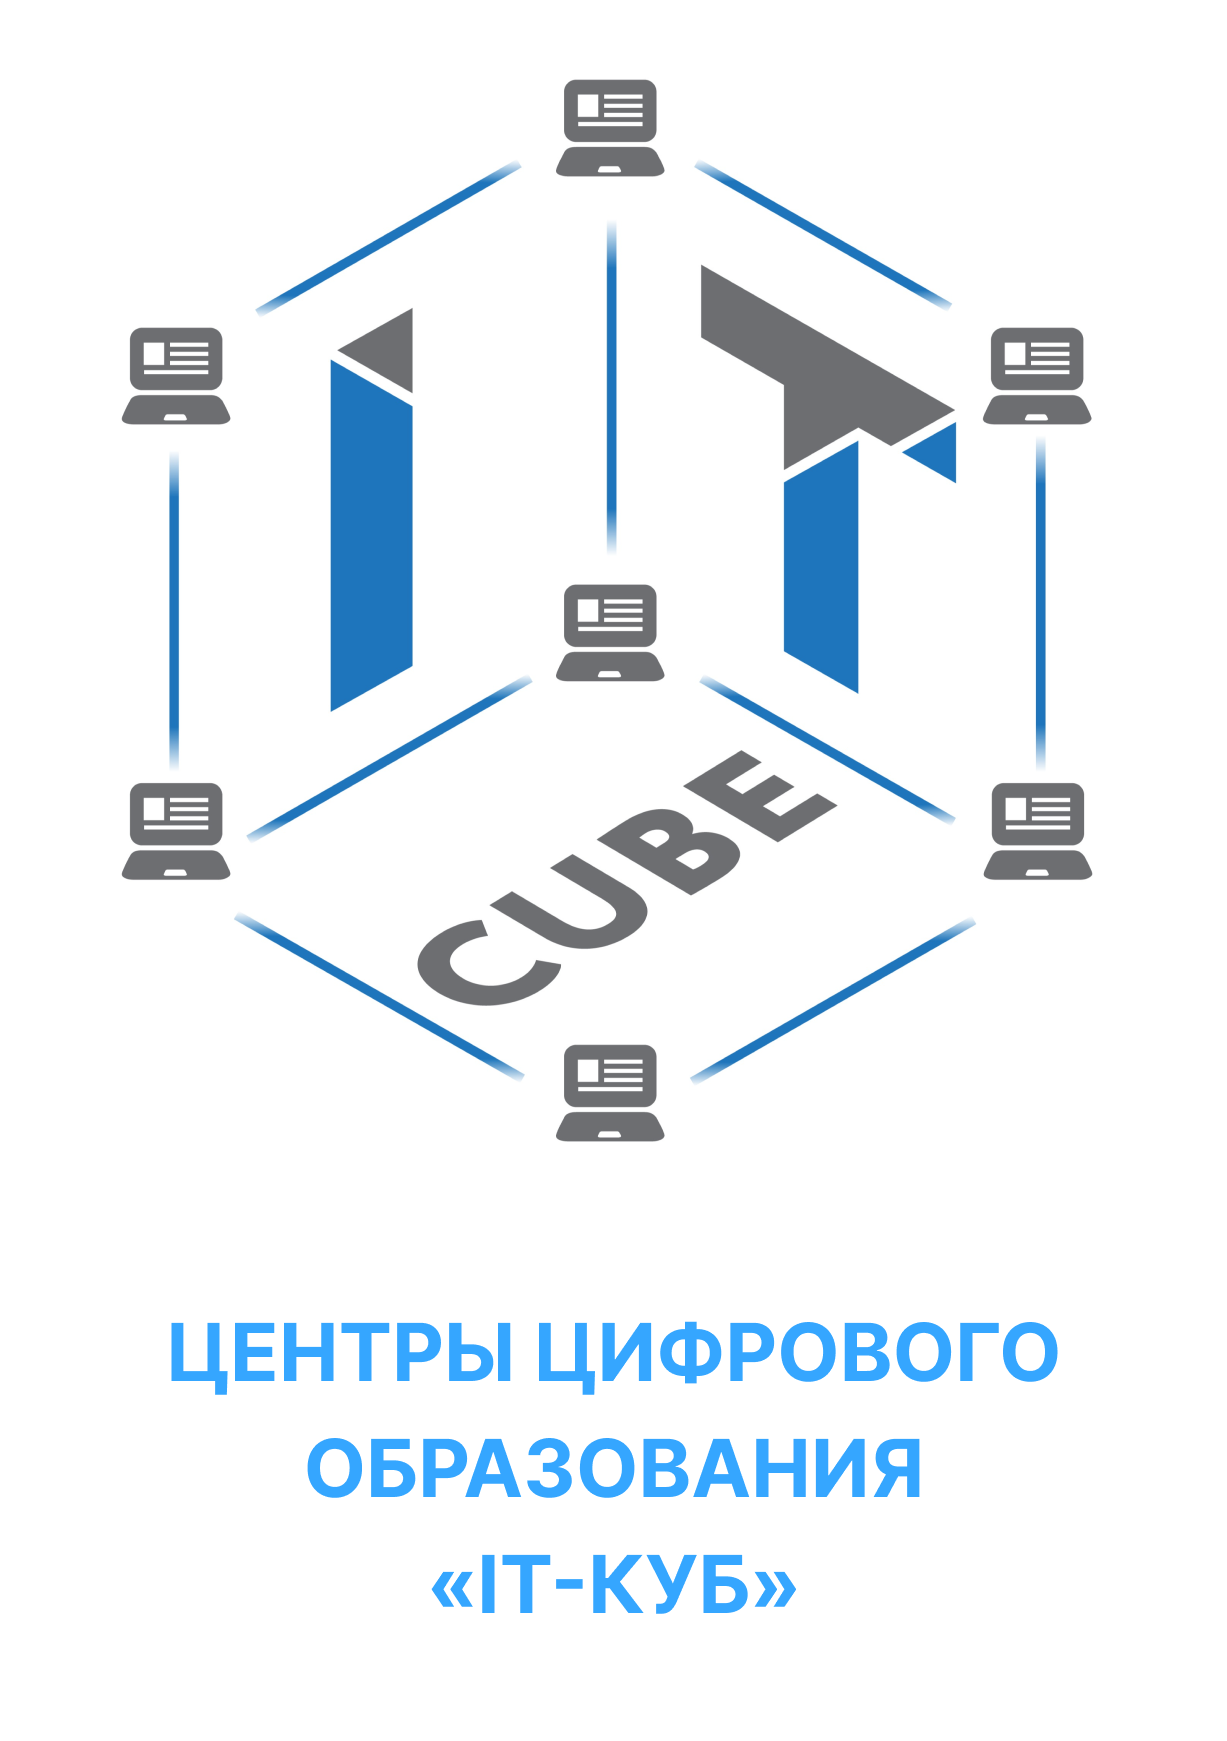 Центры цифрового образования «IT-куб»